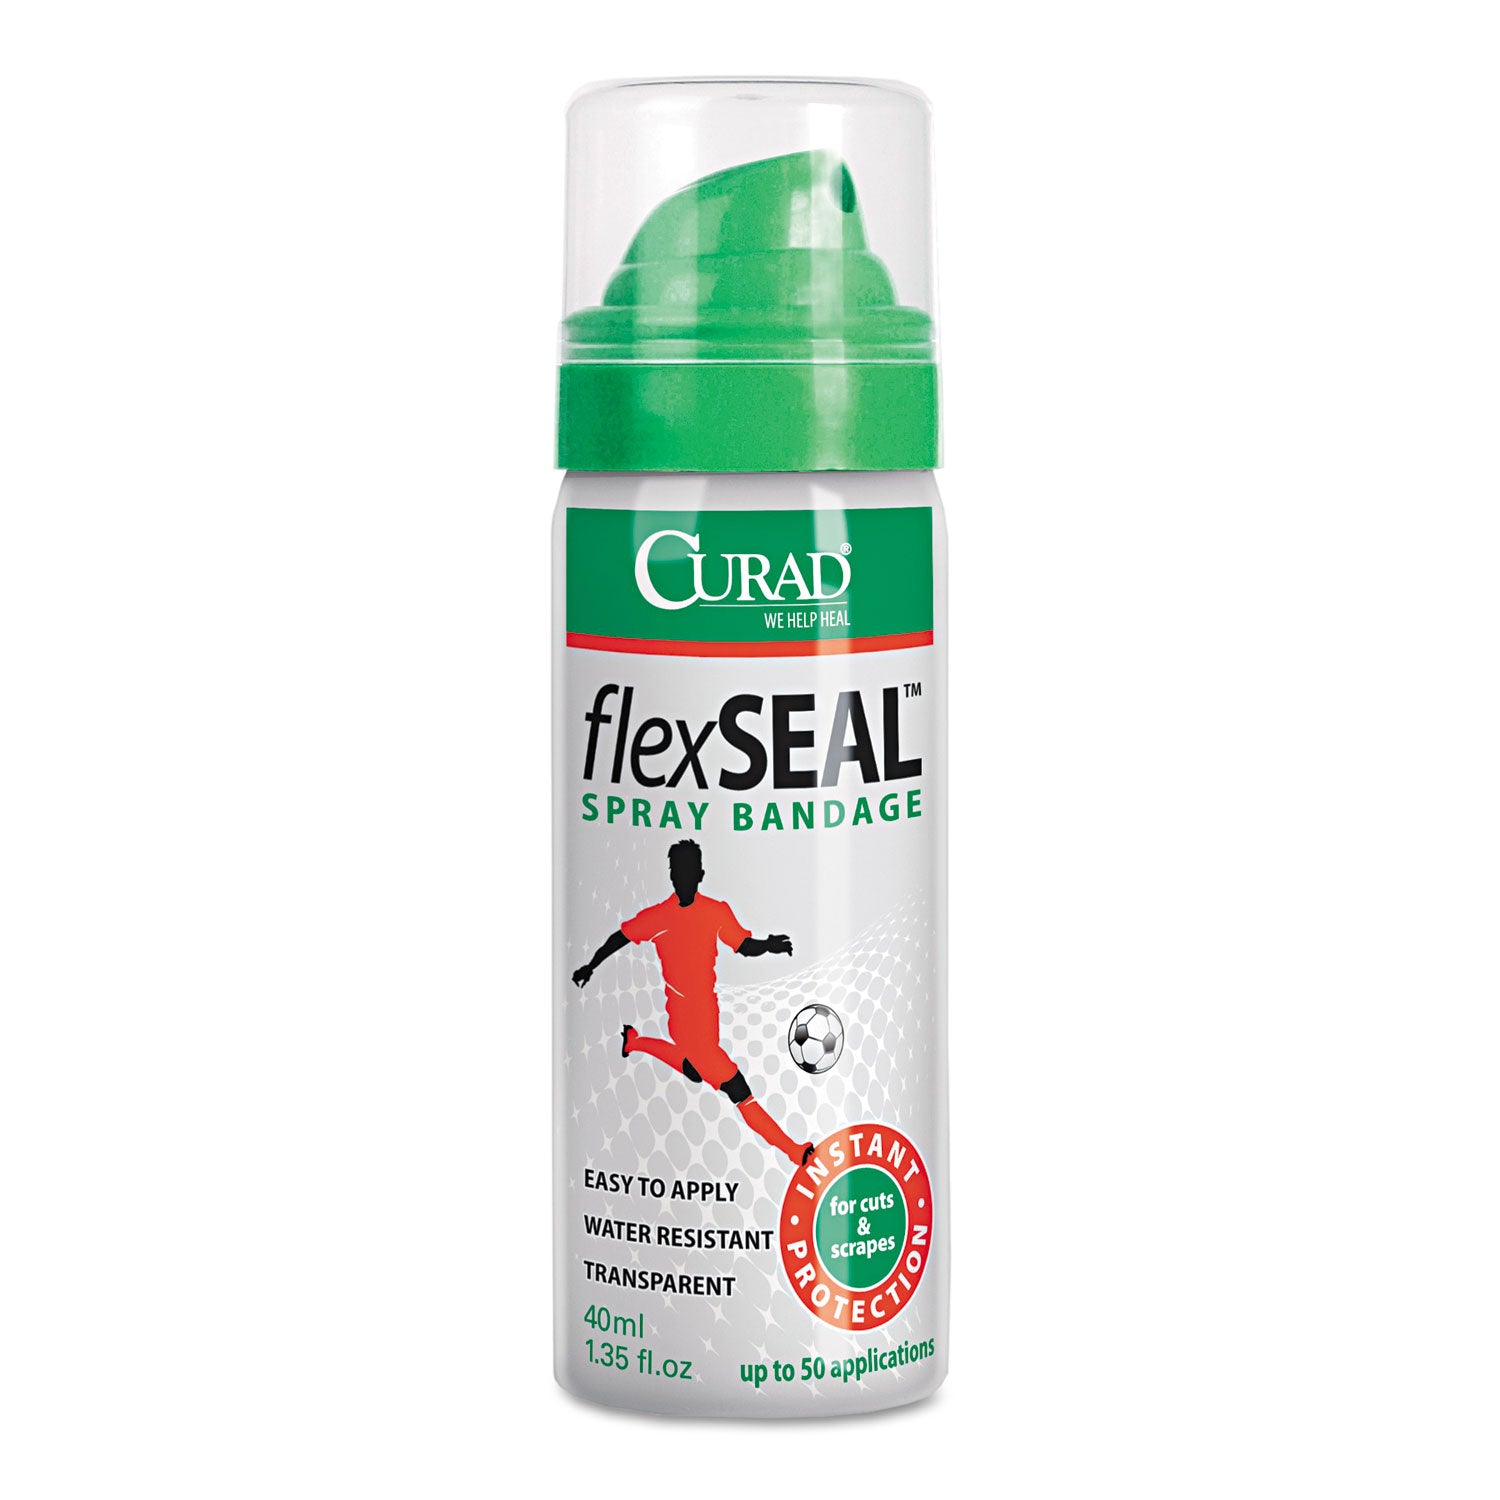 flex-seal-spray-bandage-40-ml_miicur76124rb - 1